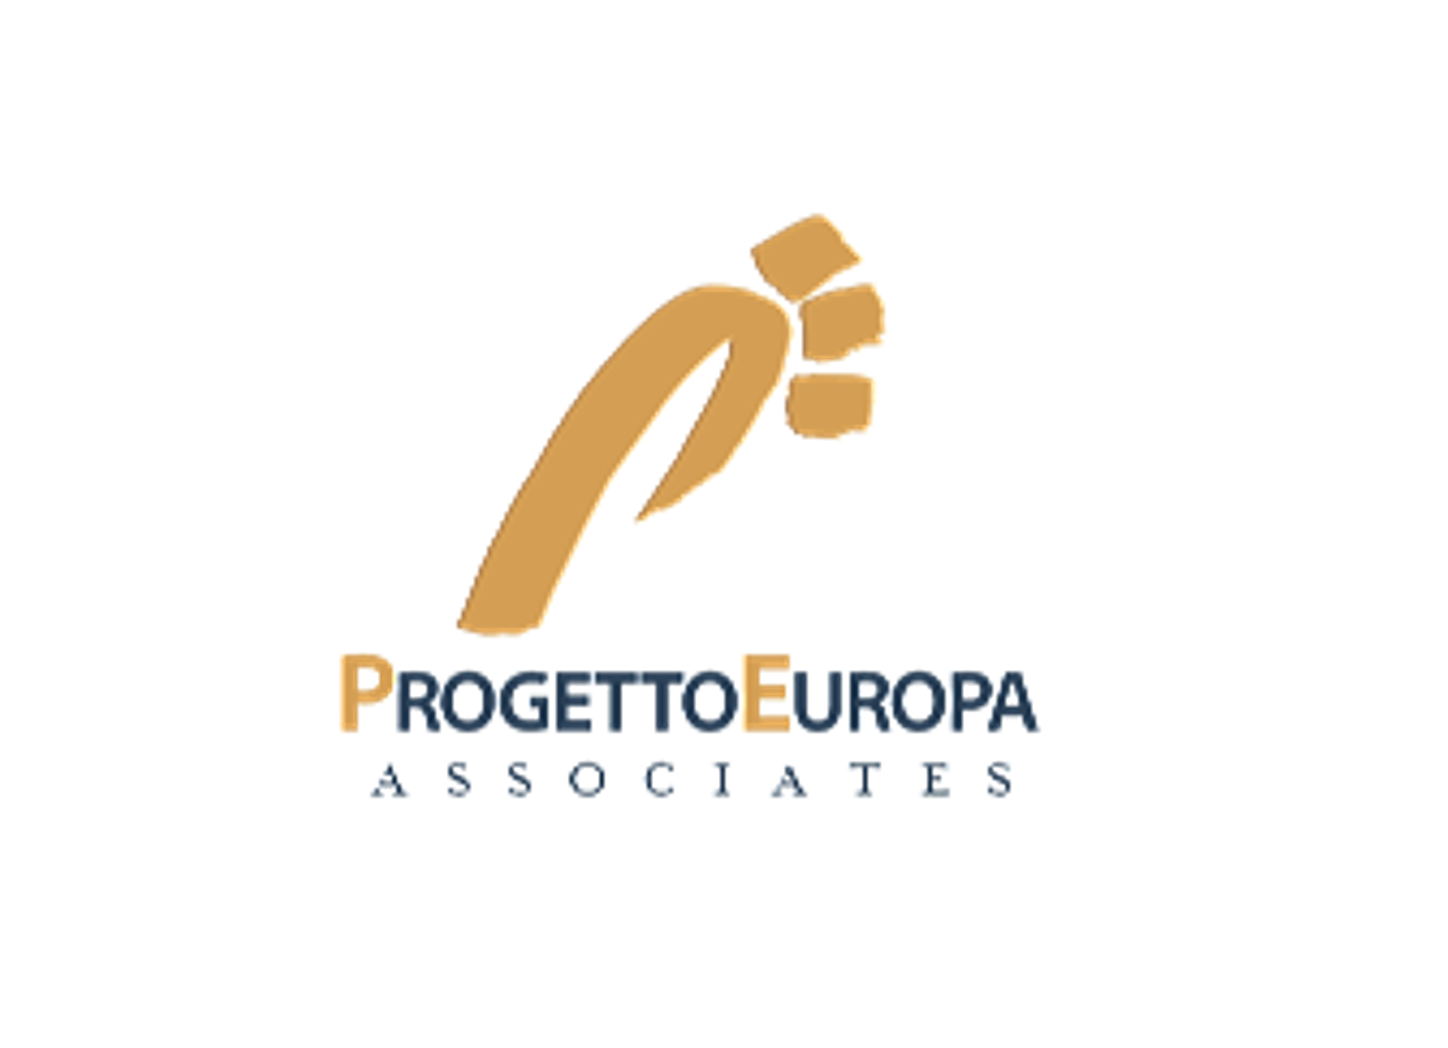 Progetto Europa logo